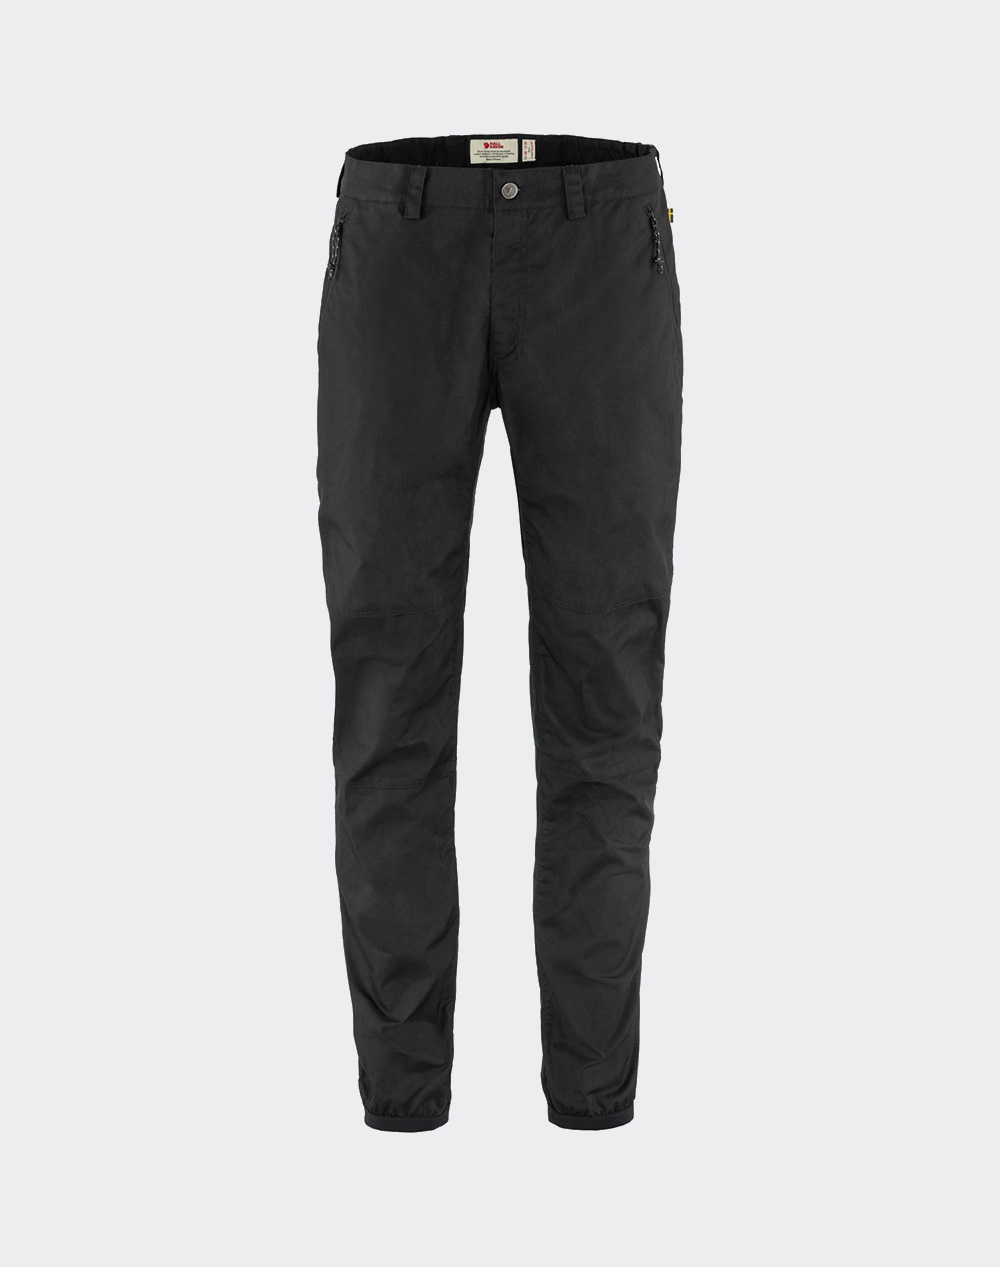 FJALLRAVEN Vardag Trousers M / Vardag Trousers M F86666-550 Black